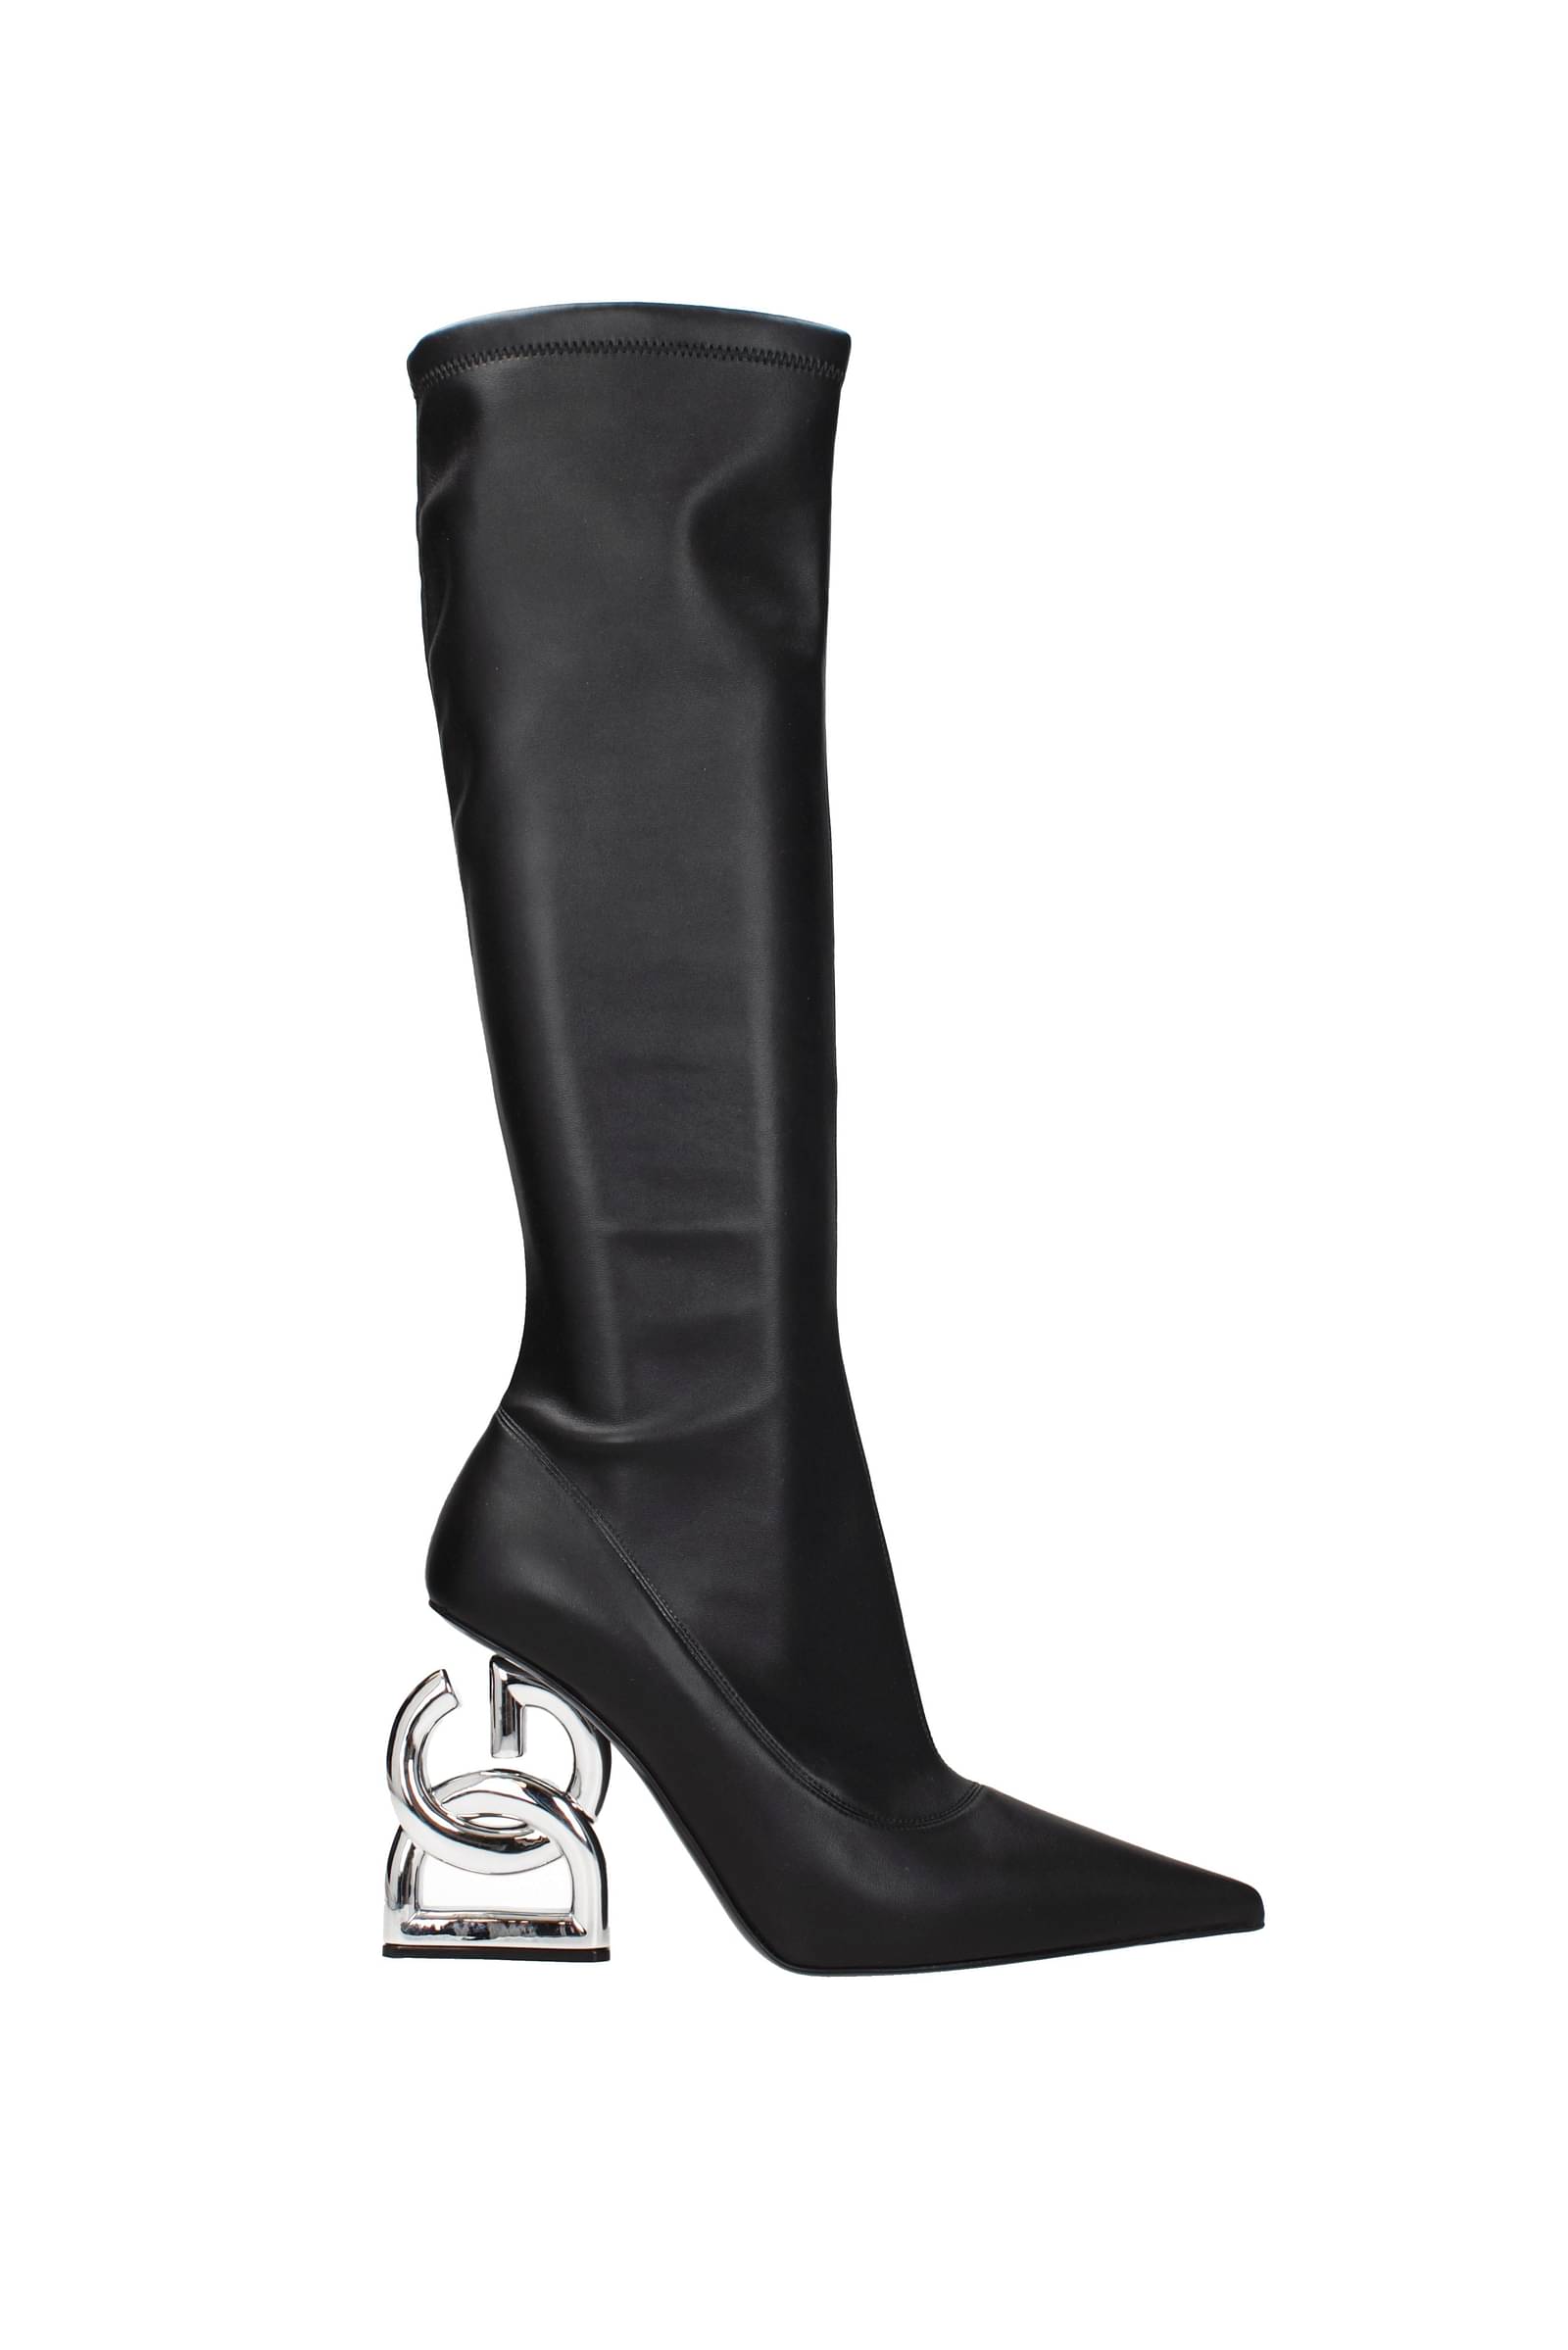 Dolce&Gabbana ブーツ 女性 CU0861AD43780999 皮革 黒 708,75€